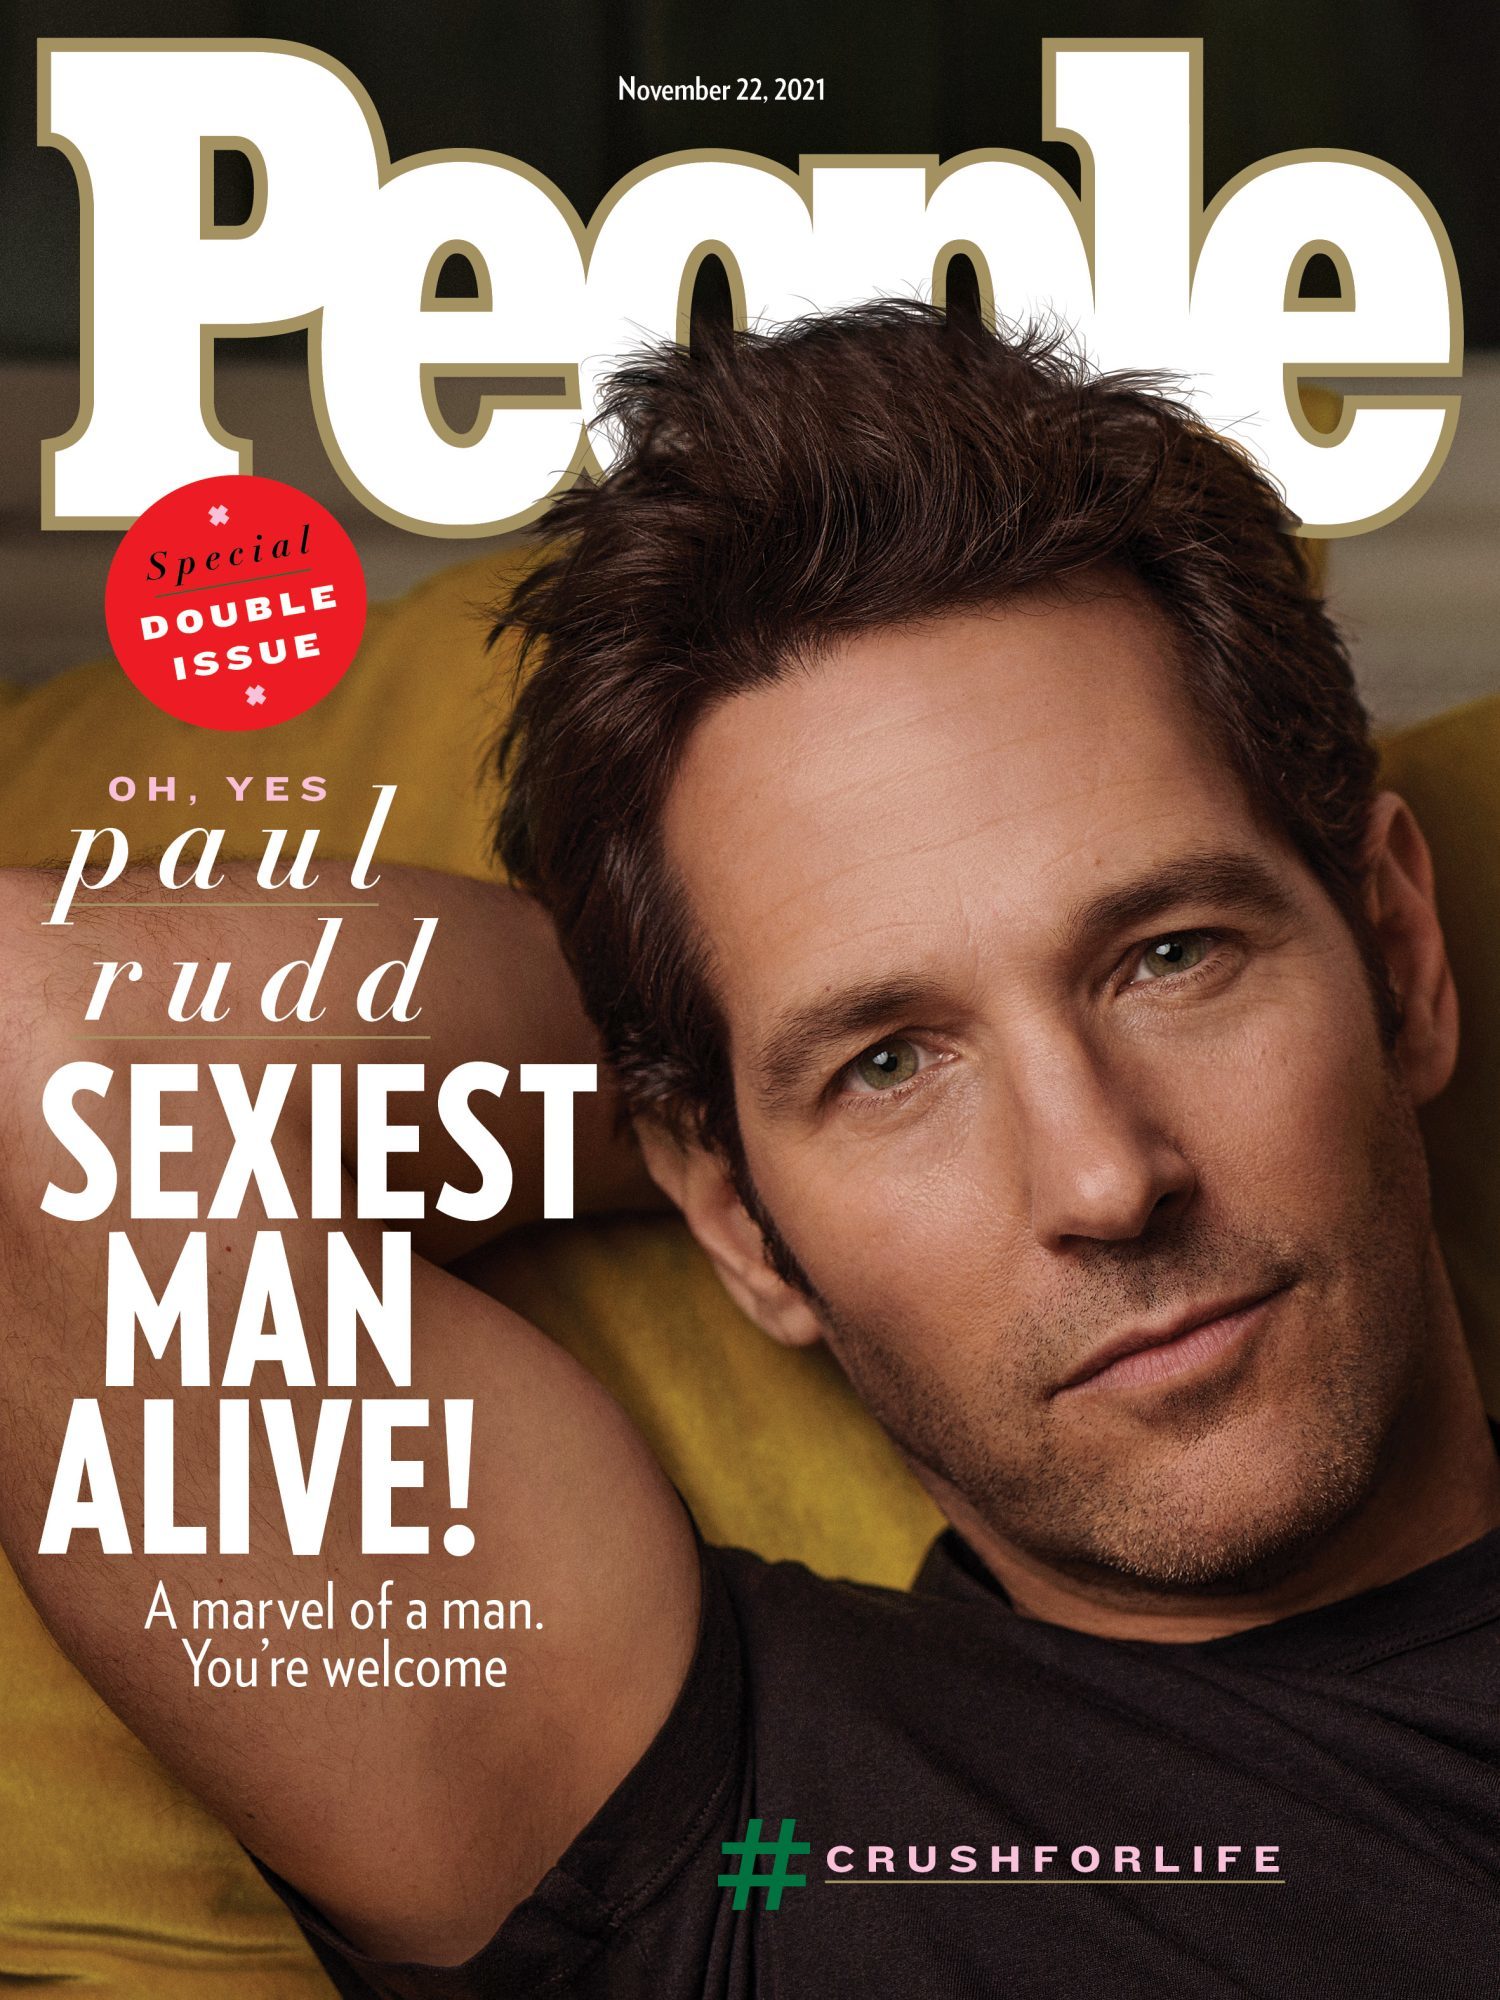 Mới đây, tạp chí People công bố danh hiệu Người đàn ông quyến rũ nhất thế giới 